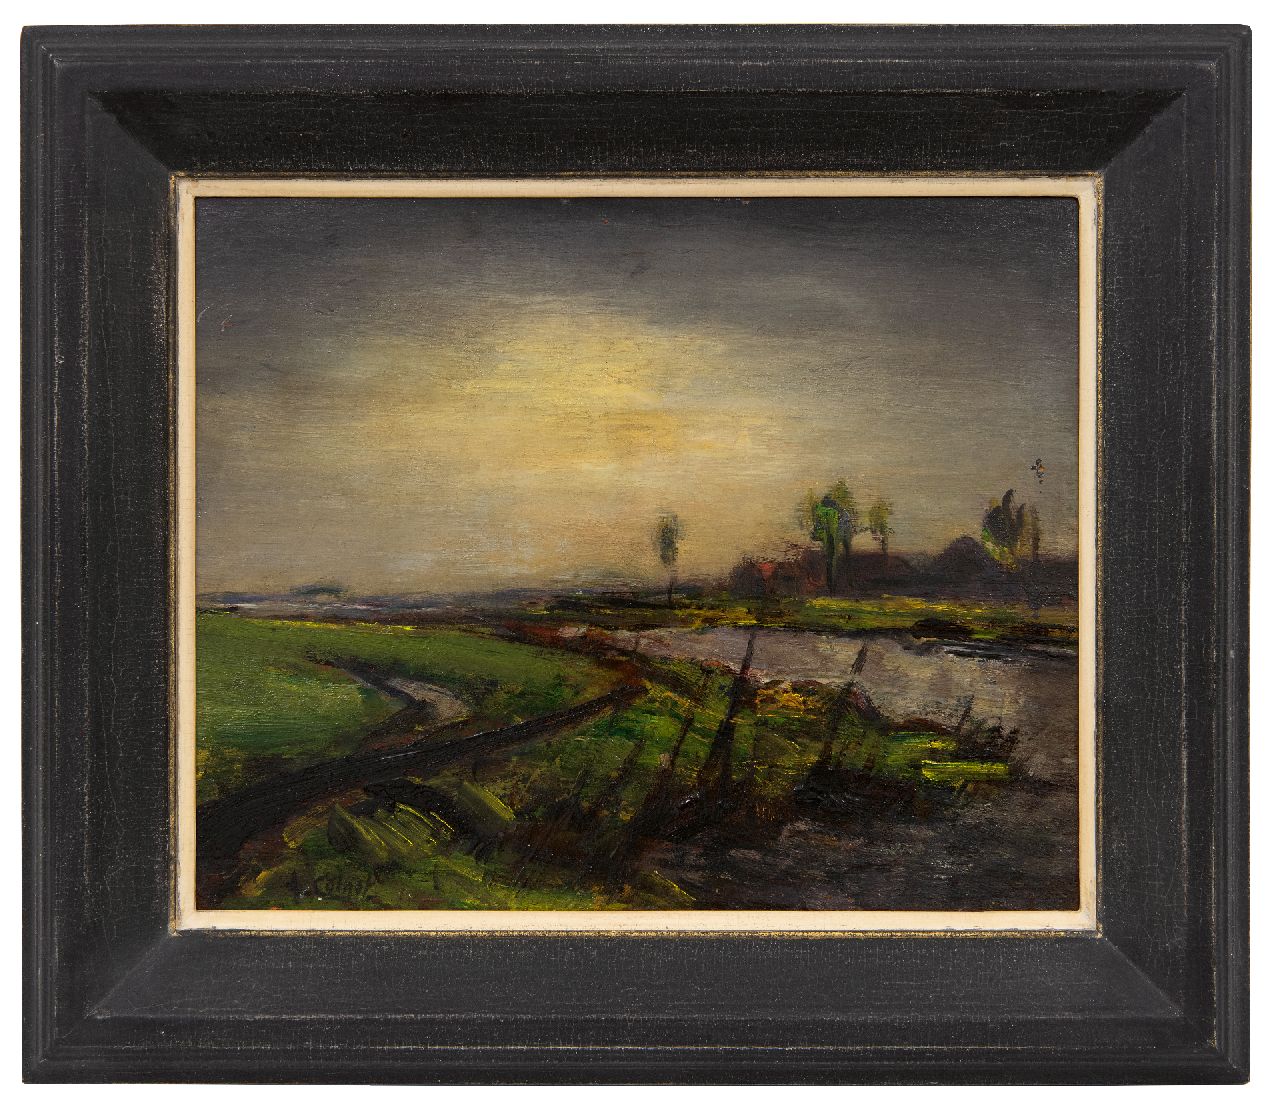 Colnot A.J.G.  | 'Arnout' Jacobus Gustaaf Colnot | Schilderijen te koop aangeboden | Polderlandschap, olieverf op paneel 24,5 x 30,1 cm, gesigneerd linksonder